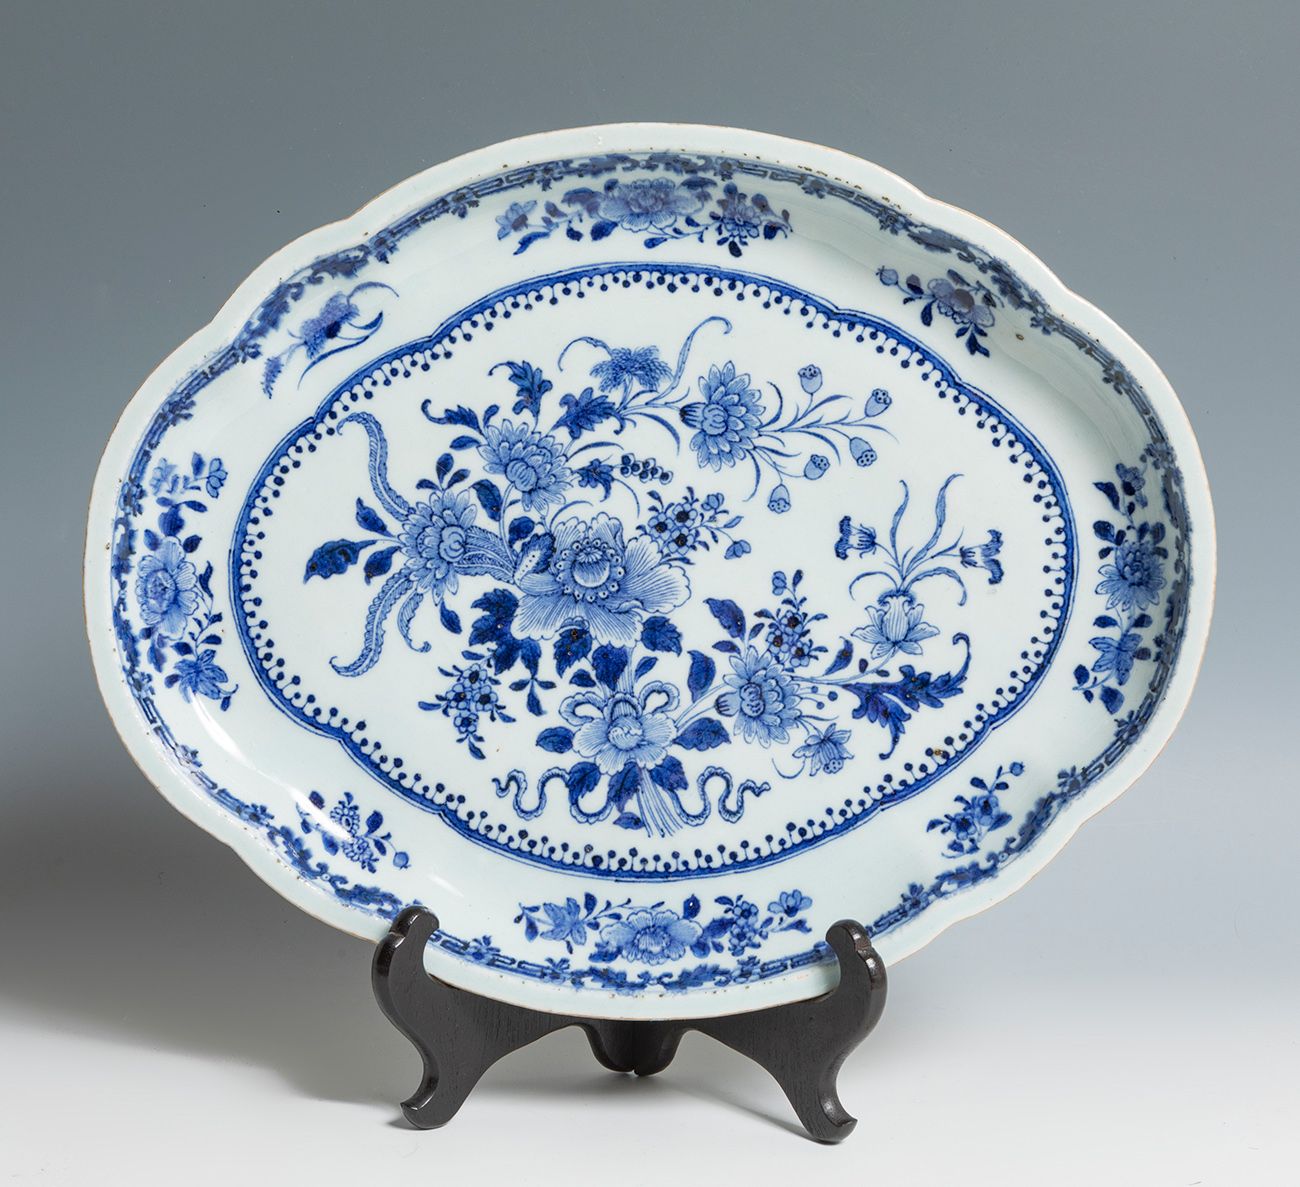 Null Plateau. Chine, XVIIIe siècle.
Porcelaine émaillée.
Mesures : 39 x 31 cm.
P&hellip;